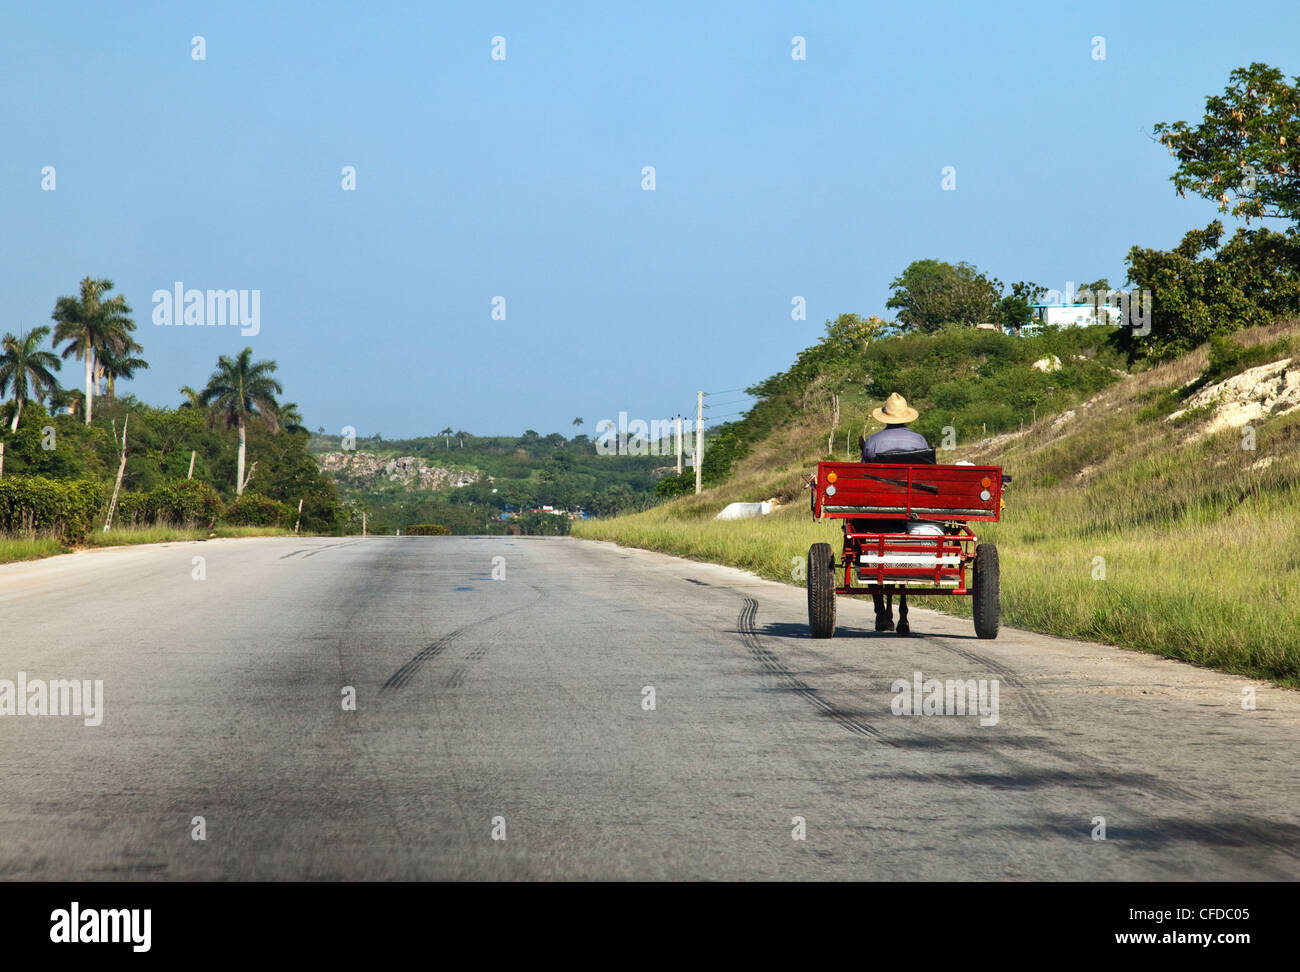 Mann, treibende Pferd und Wagen auf einer weiten einsamen Landstraße, Kuba, Karibik, Mittelamerika Stockfoto